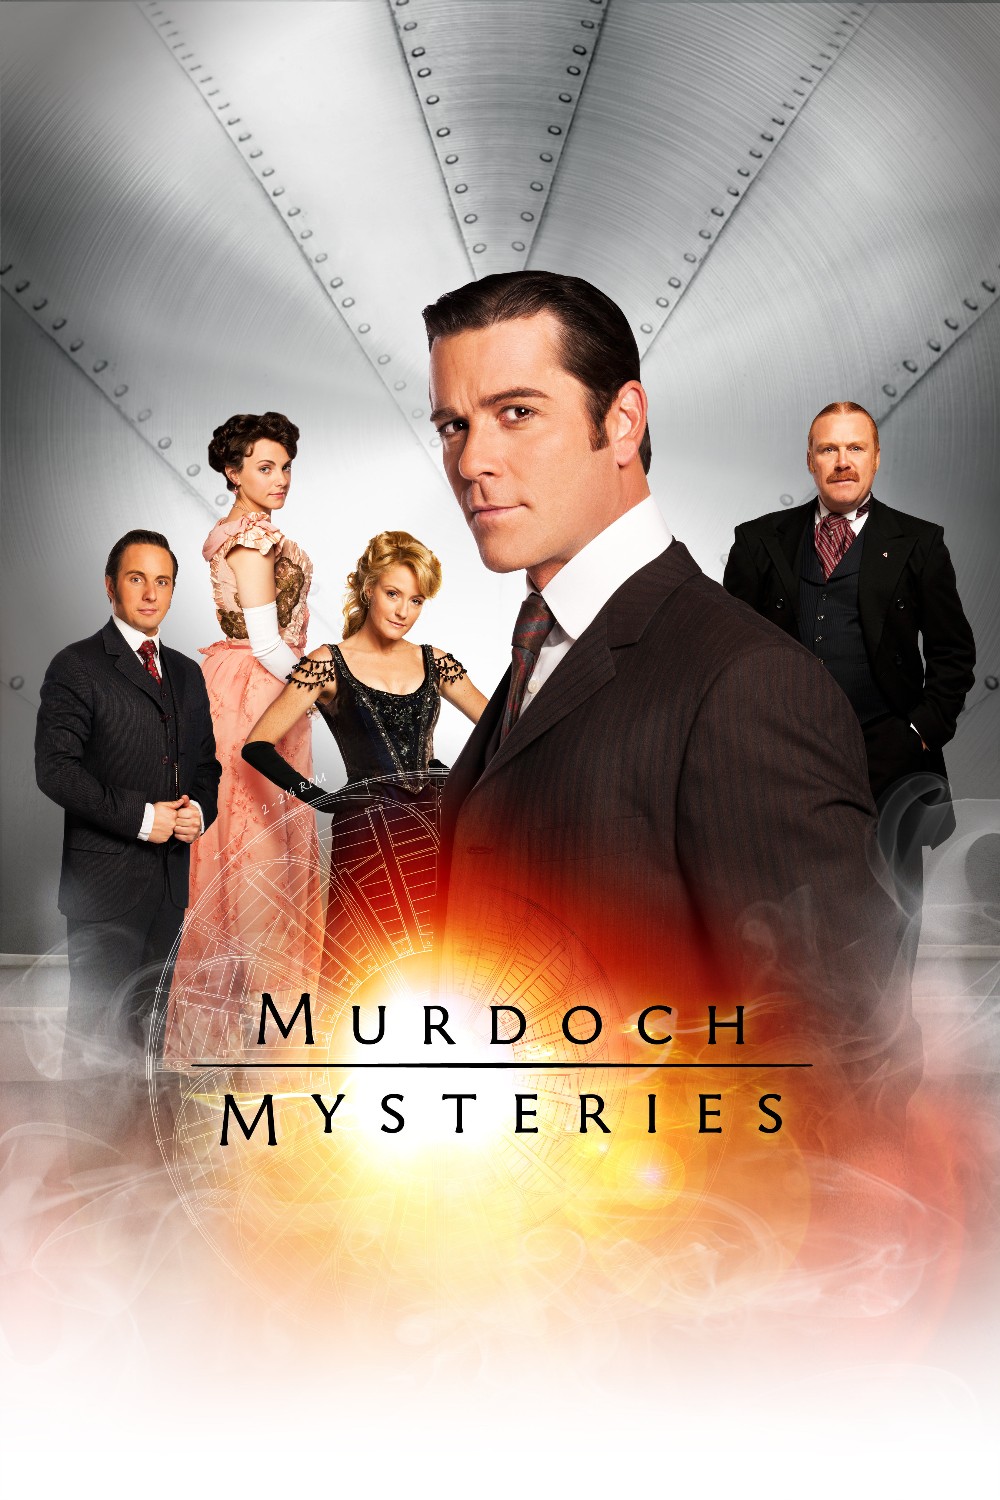 Murdoch Mysteries S17E12 [1080p/720p] WEBRip (x264/x265) [6 CH] 5298c1f0d134e07ff9aeb92fcb35cedd